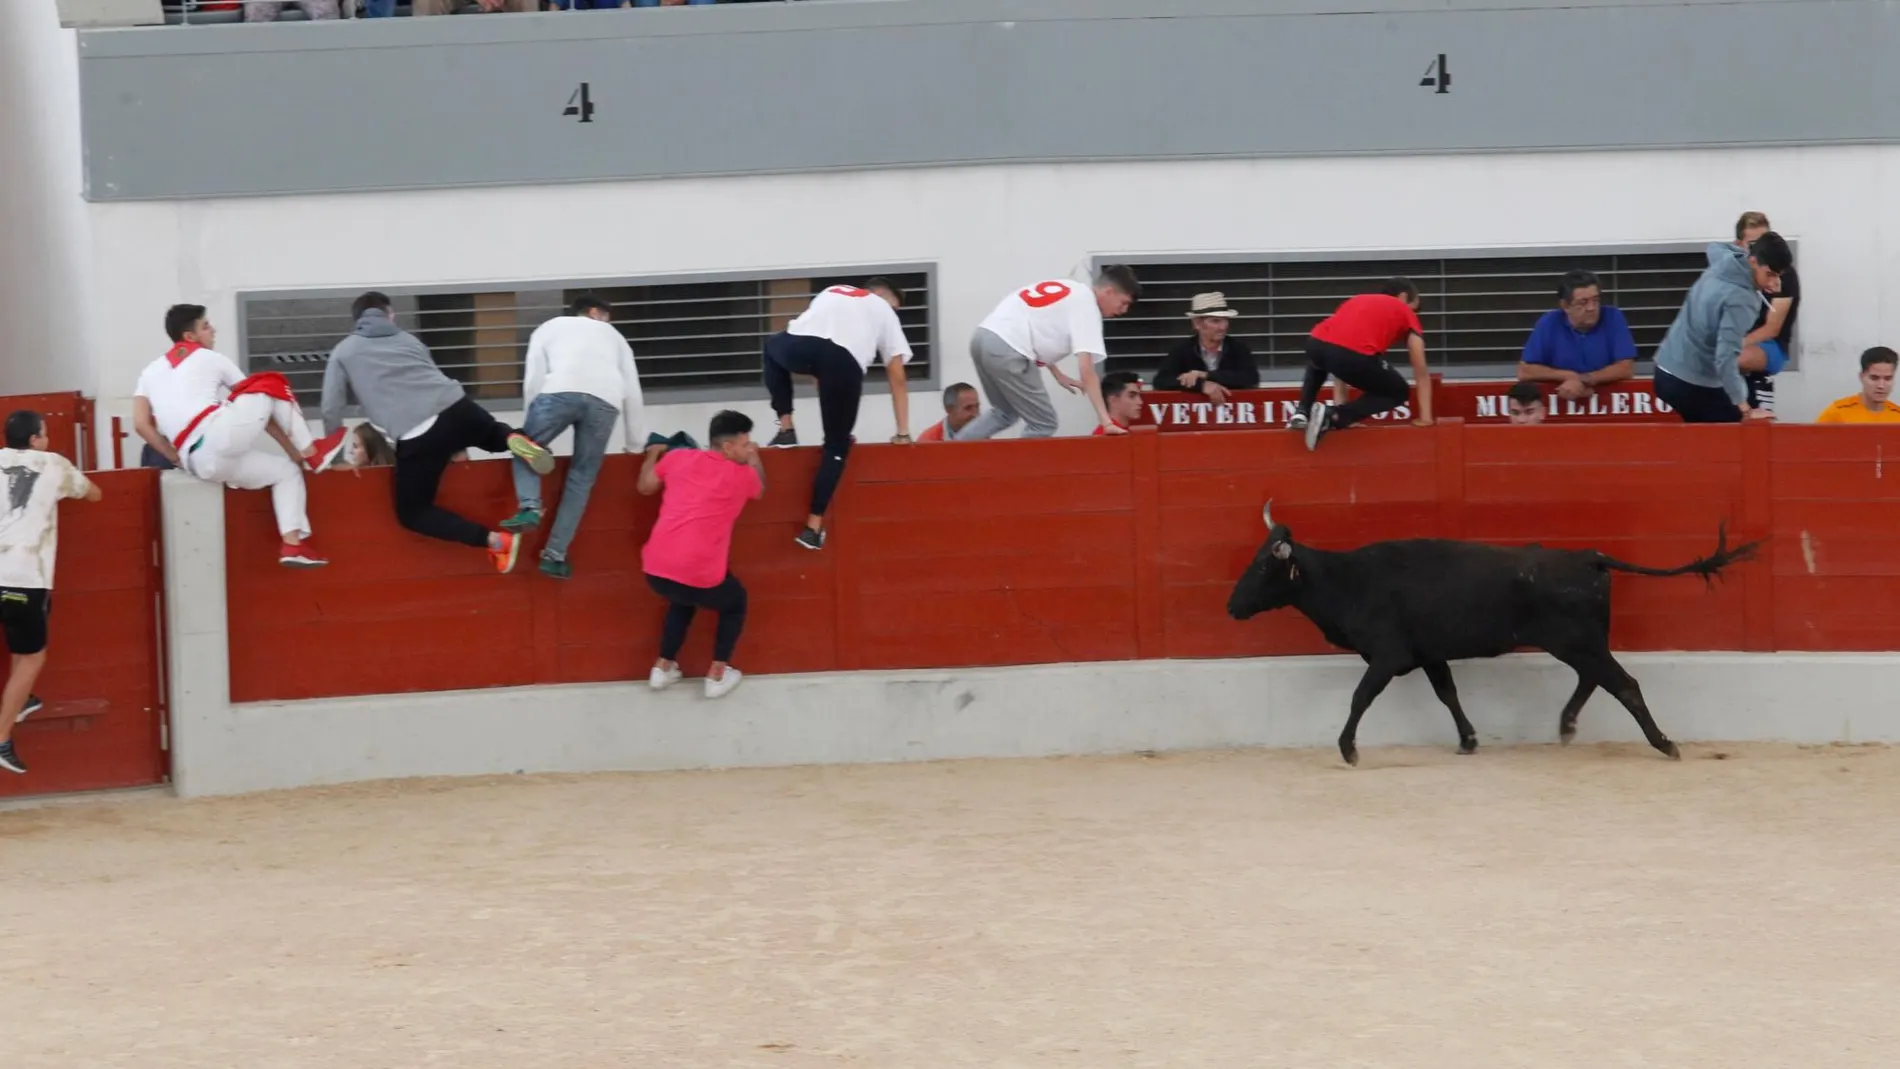 El incidente del pasado fin de semana en Vidreres (Girona) ha devuelto a la palestra la silenciada realidad de los toros en Cataluña